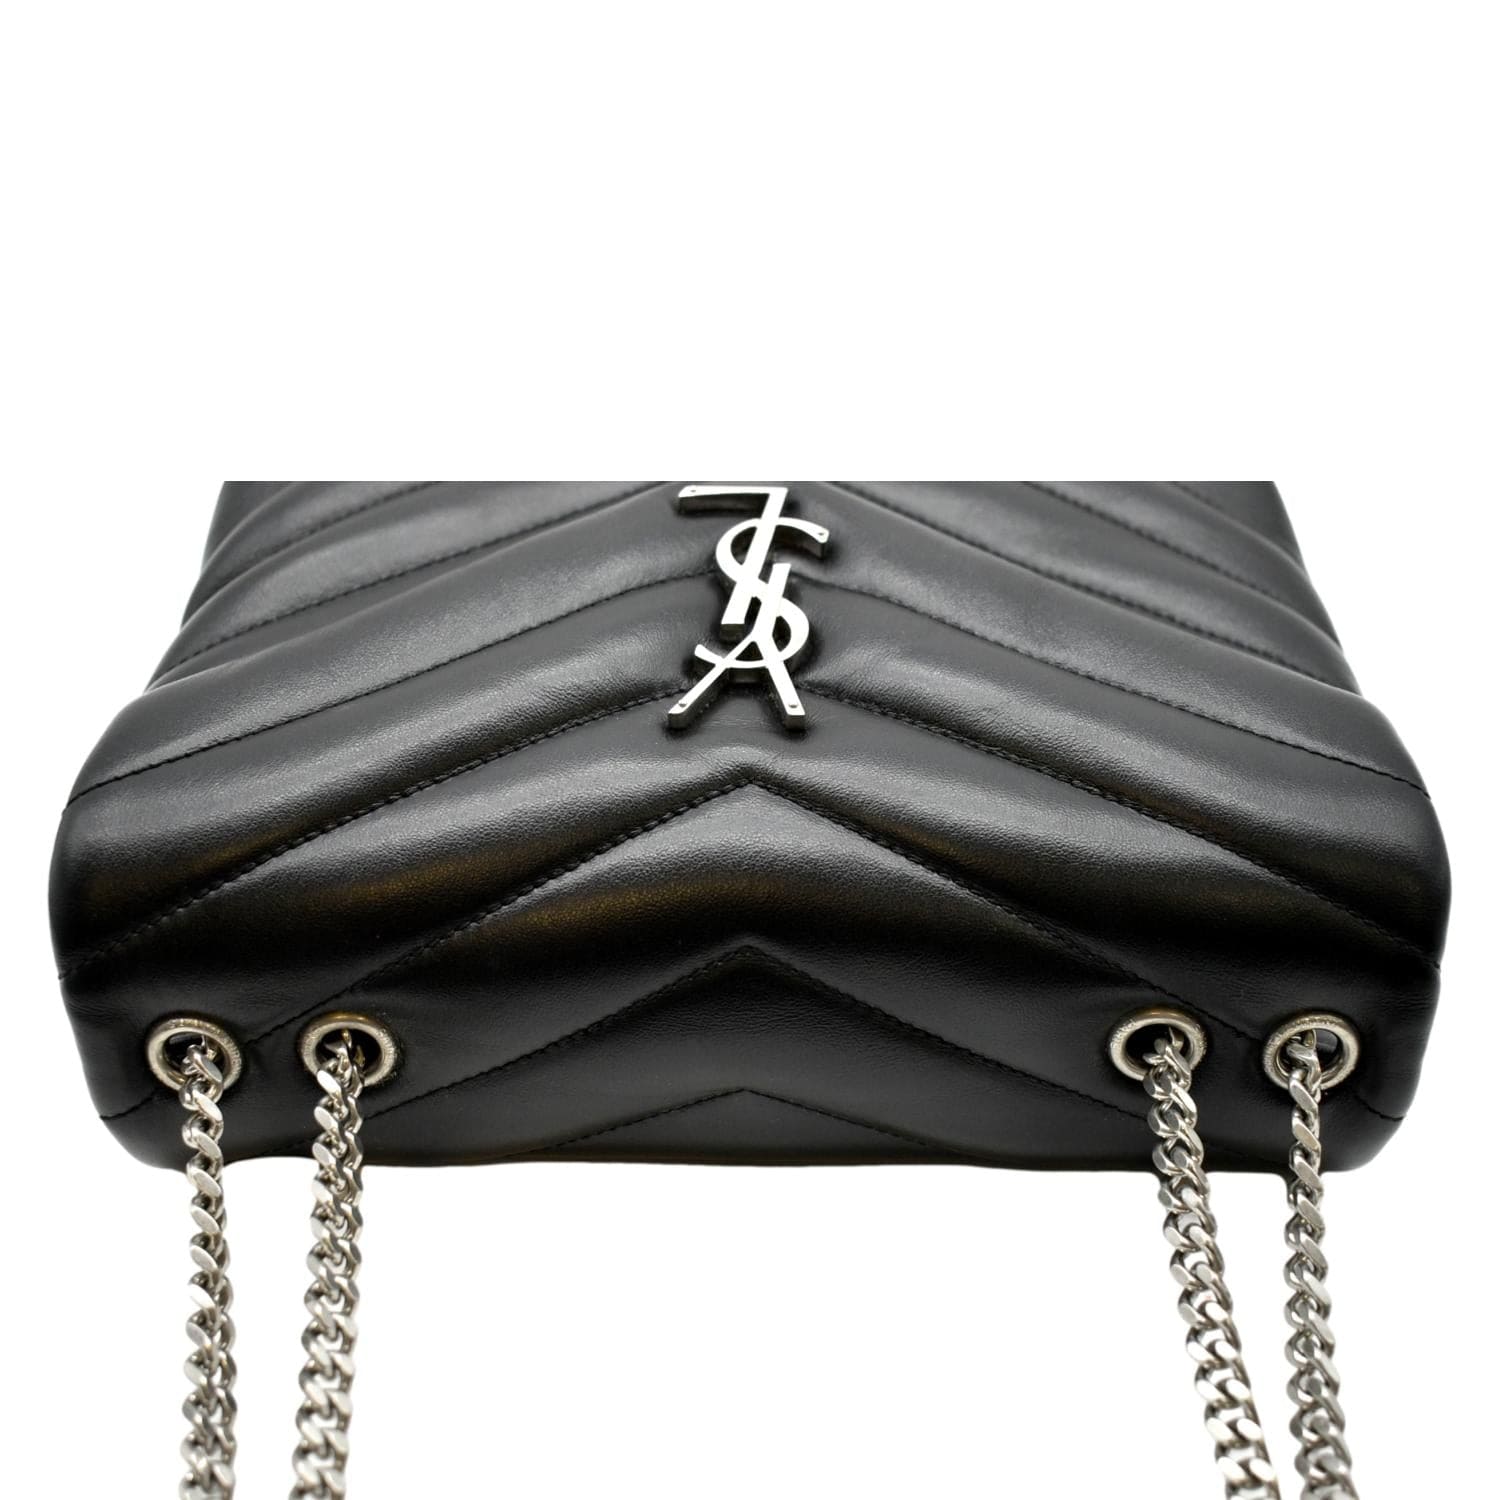 Shop Saint Laurent Small Loulou Matelass Leather Shoulder Bag